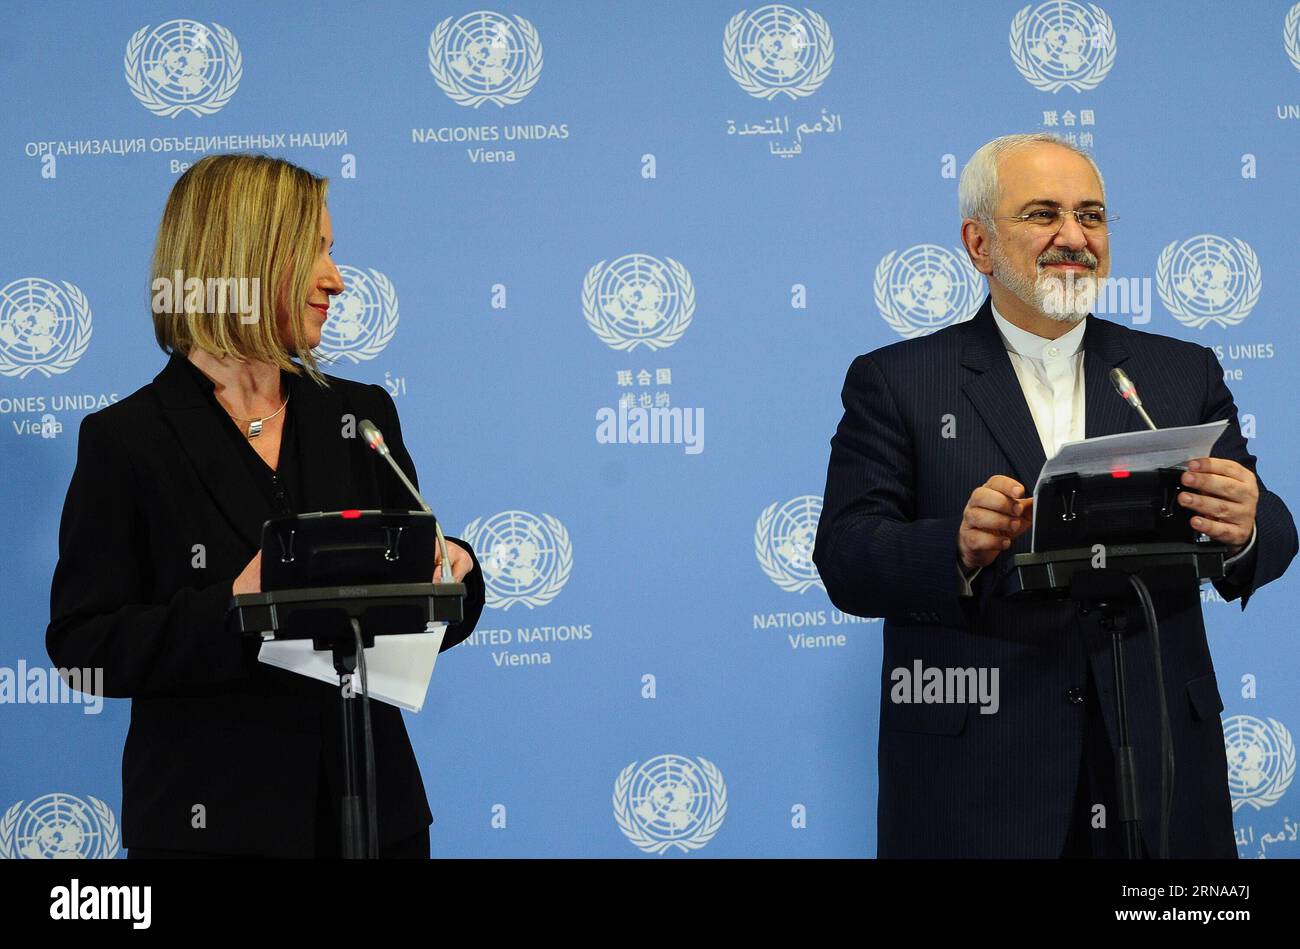 Il ministro degli Esteri iraniano Mohammad Javad Zarif(R) e il capo della politica estera dell'UE Federica Mogherini partecipano a una conferenza stampa a Vienna, in Austria, il 16 gennaio 2016. Sabato sera l'Unione europea (UE) e l'Iran hanno annunciato congiuntamente il giorno di attuazione dello storico accordo nucleare dopo che l'Agenzia internazionale per l'energia atomica (AIEA) ha confermato che tutte le fasi di preparazione richieste sono state completate da Teheran. L'UE ha revocato le sue sanzioni economiche contro l'Iran dopo l'annuncio dell'AIEA. ) AUSTRIA-VIENNA-UE-IRAN-EUCLEAR DEAL IMPLEMENTATION-SANCTIONS-REMOVED QianxYi PUBLICATIONxNOTxINxCHN Iranian Foreig Foto Stock